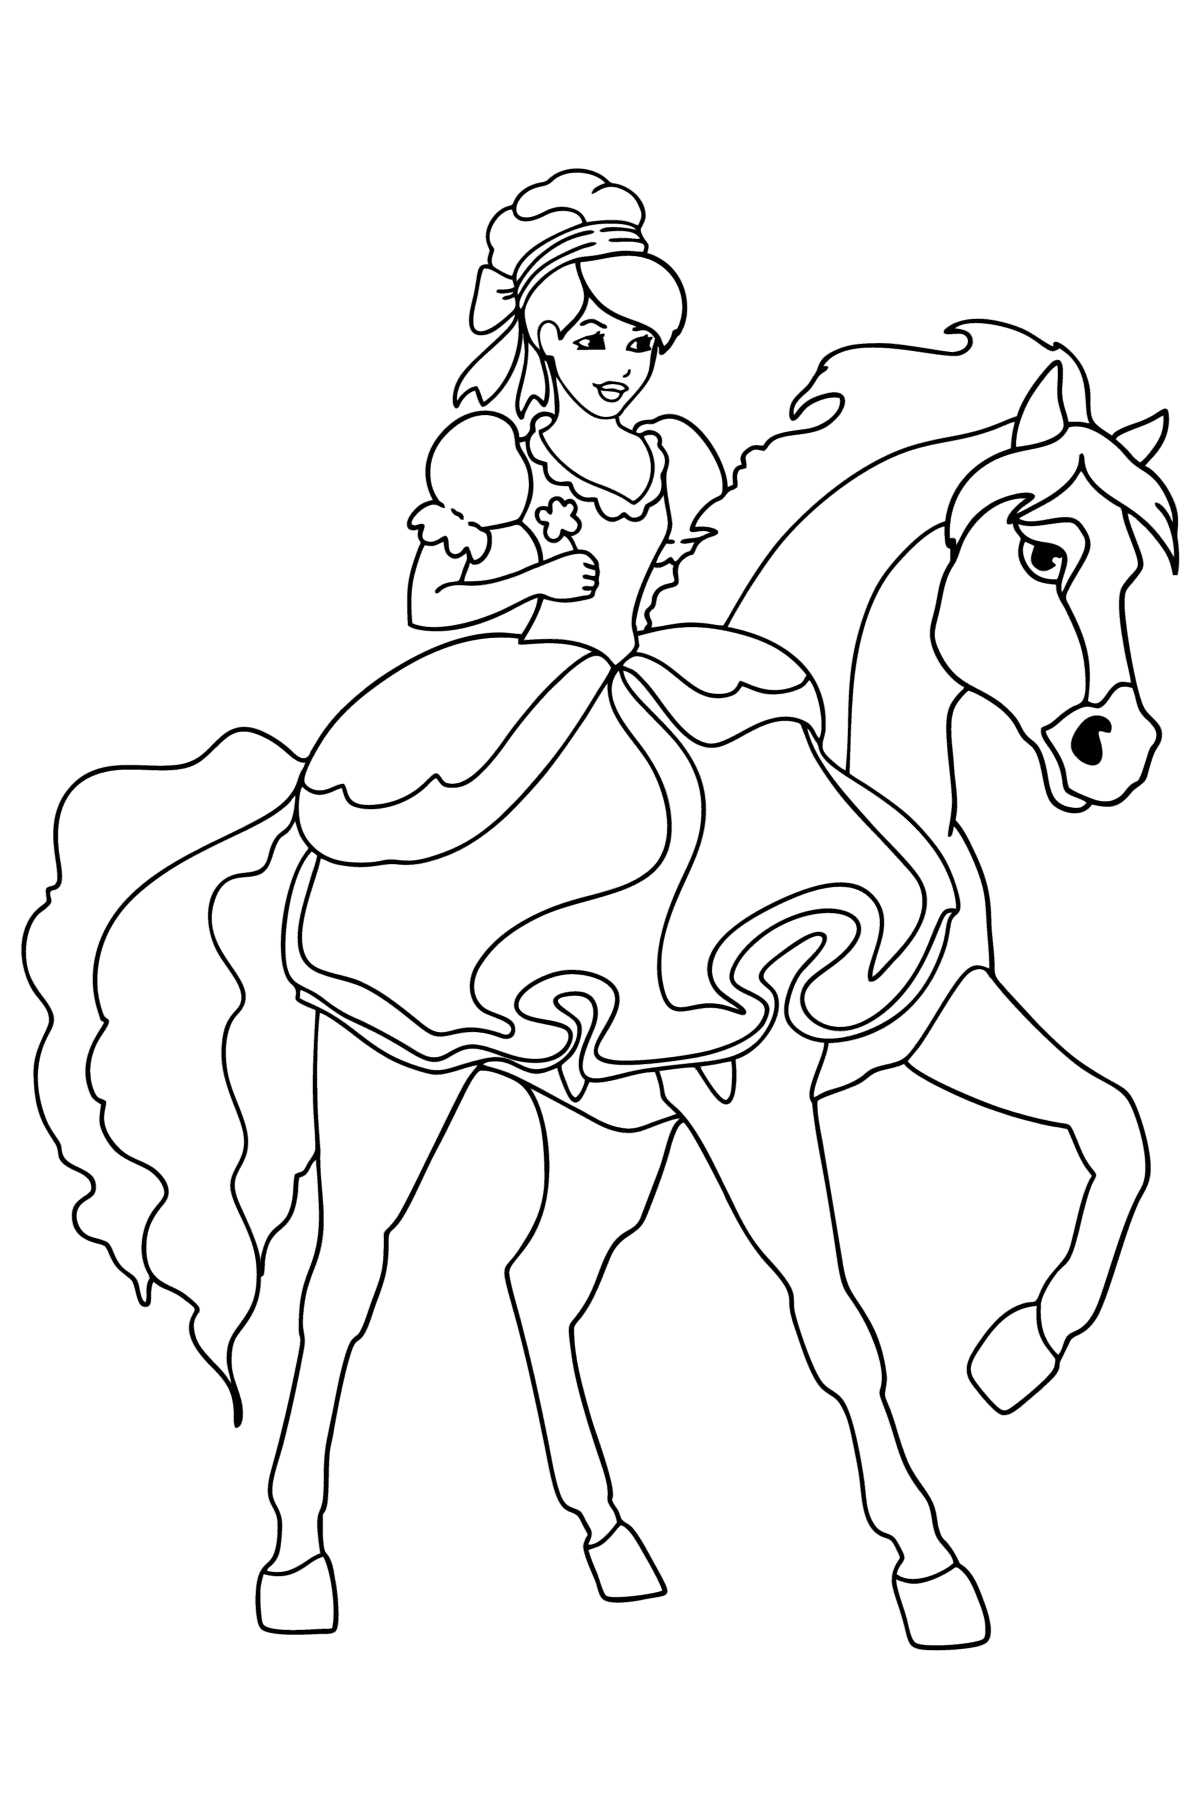 Tegning til fargelegging Prinsesse på hest - Tegninger til fargelegging for barn